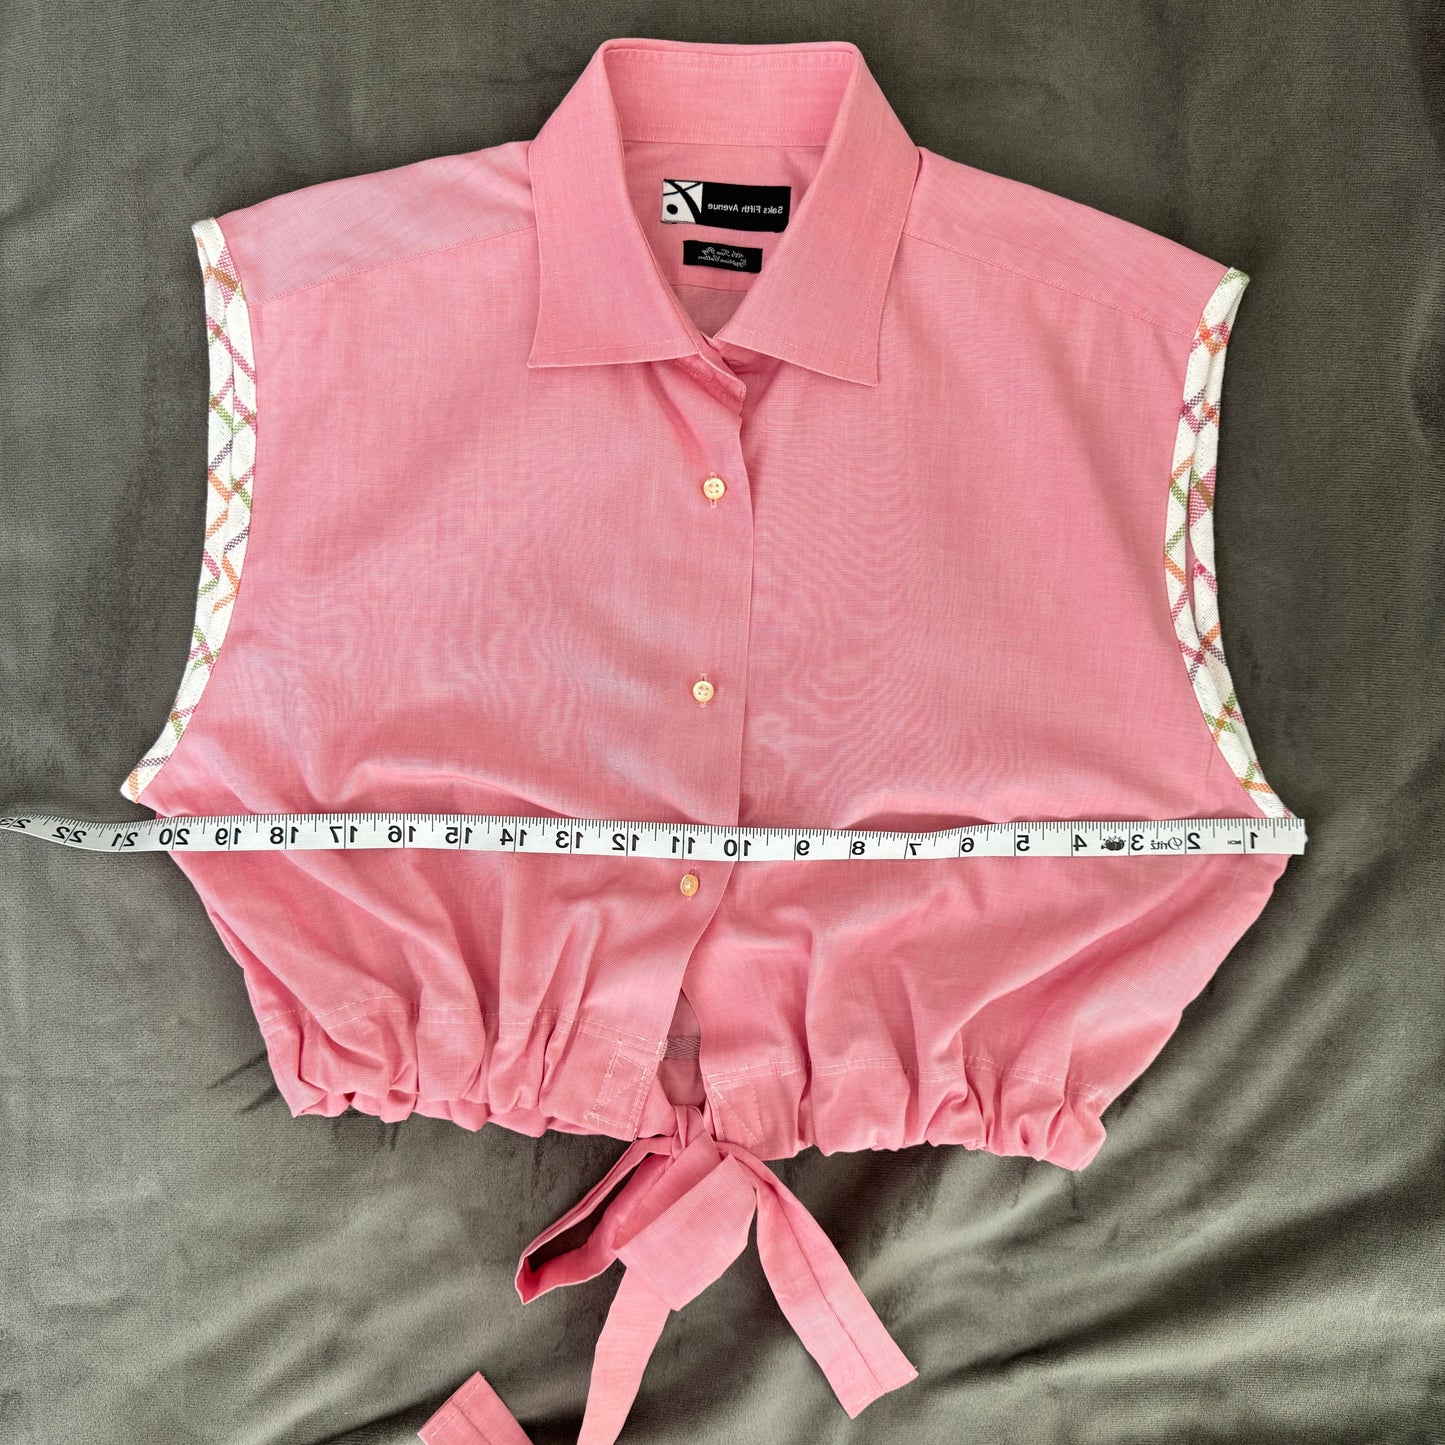 Dress shirt crop top - pink with tie